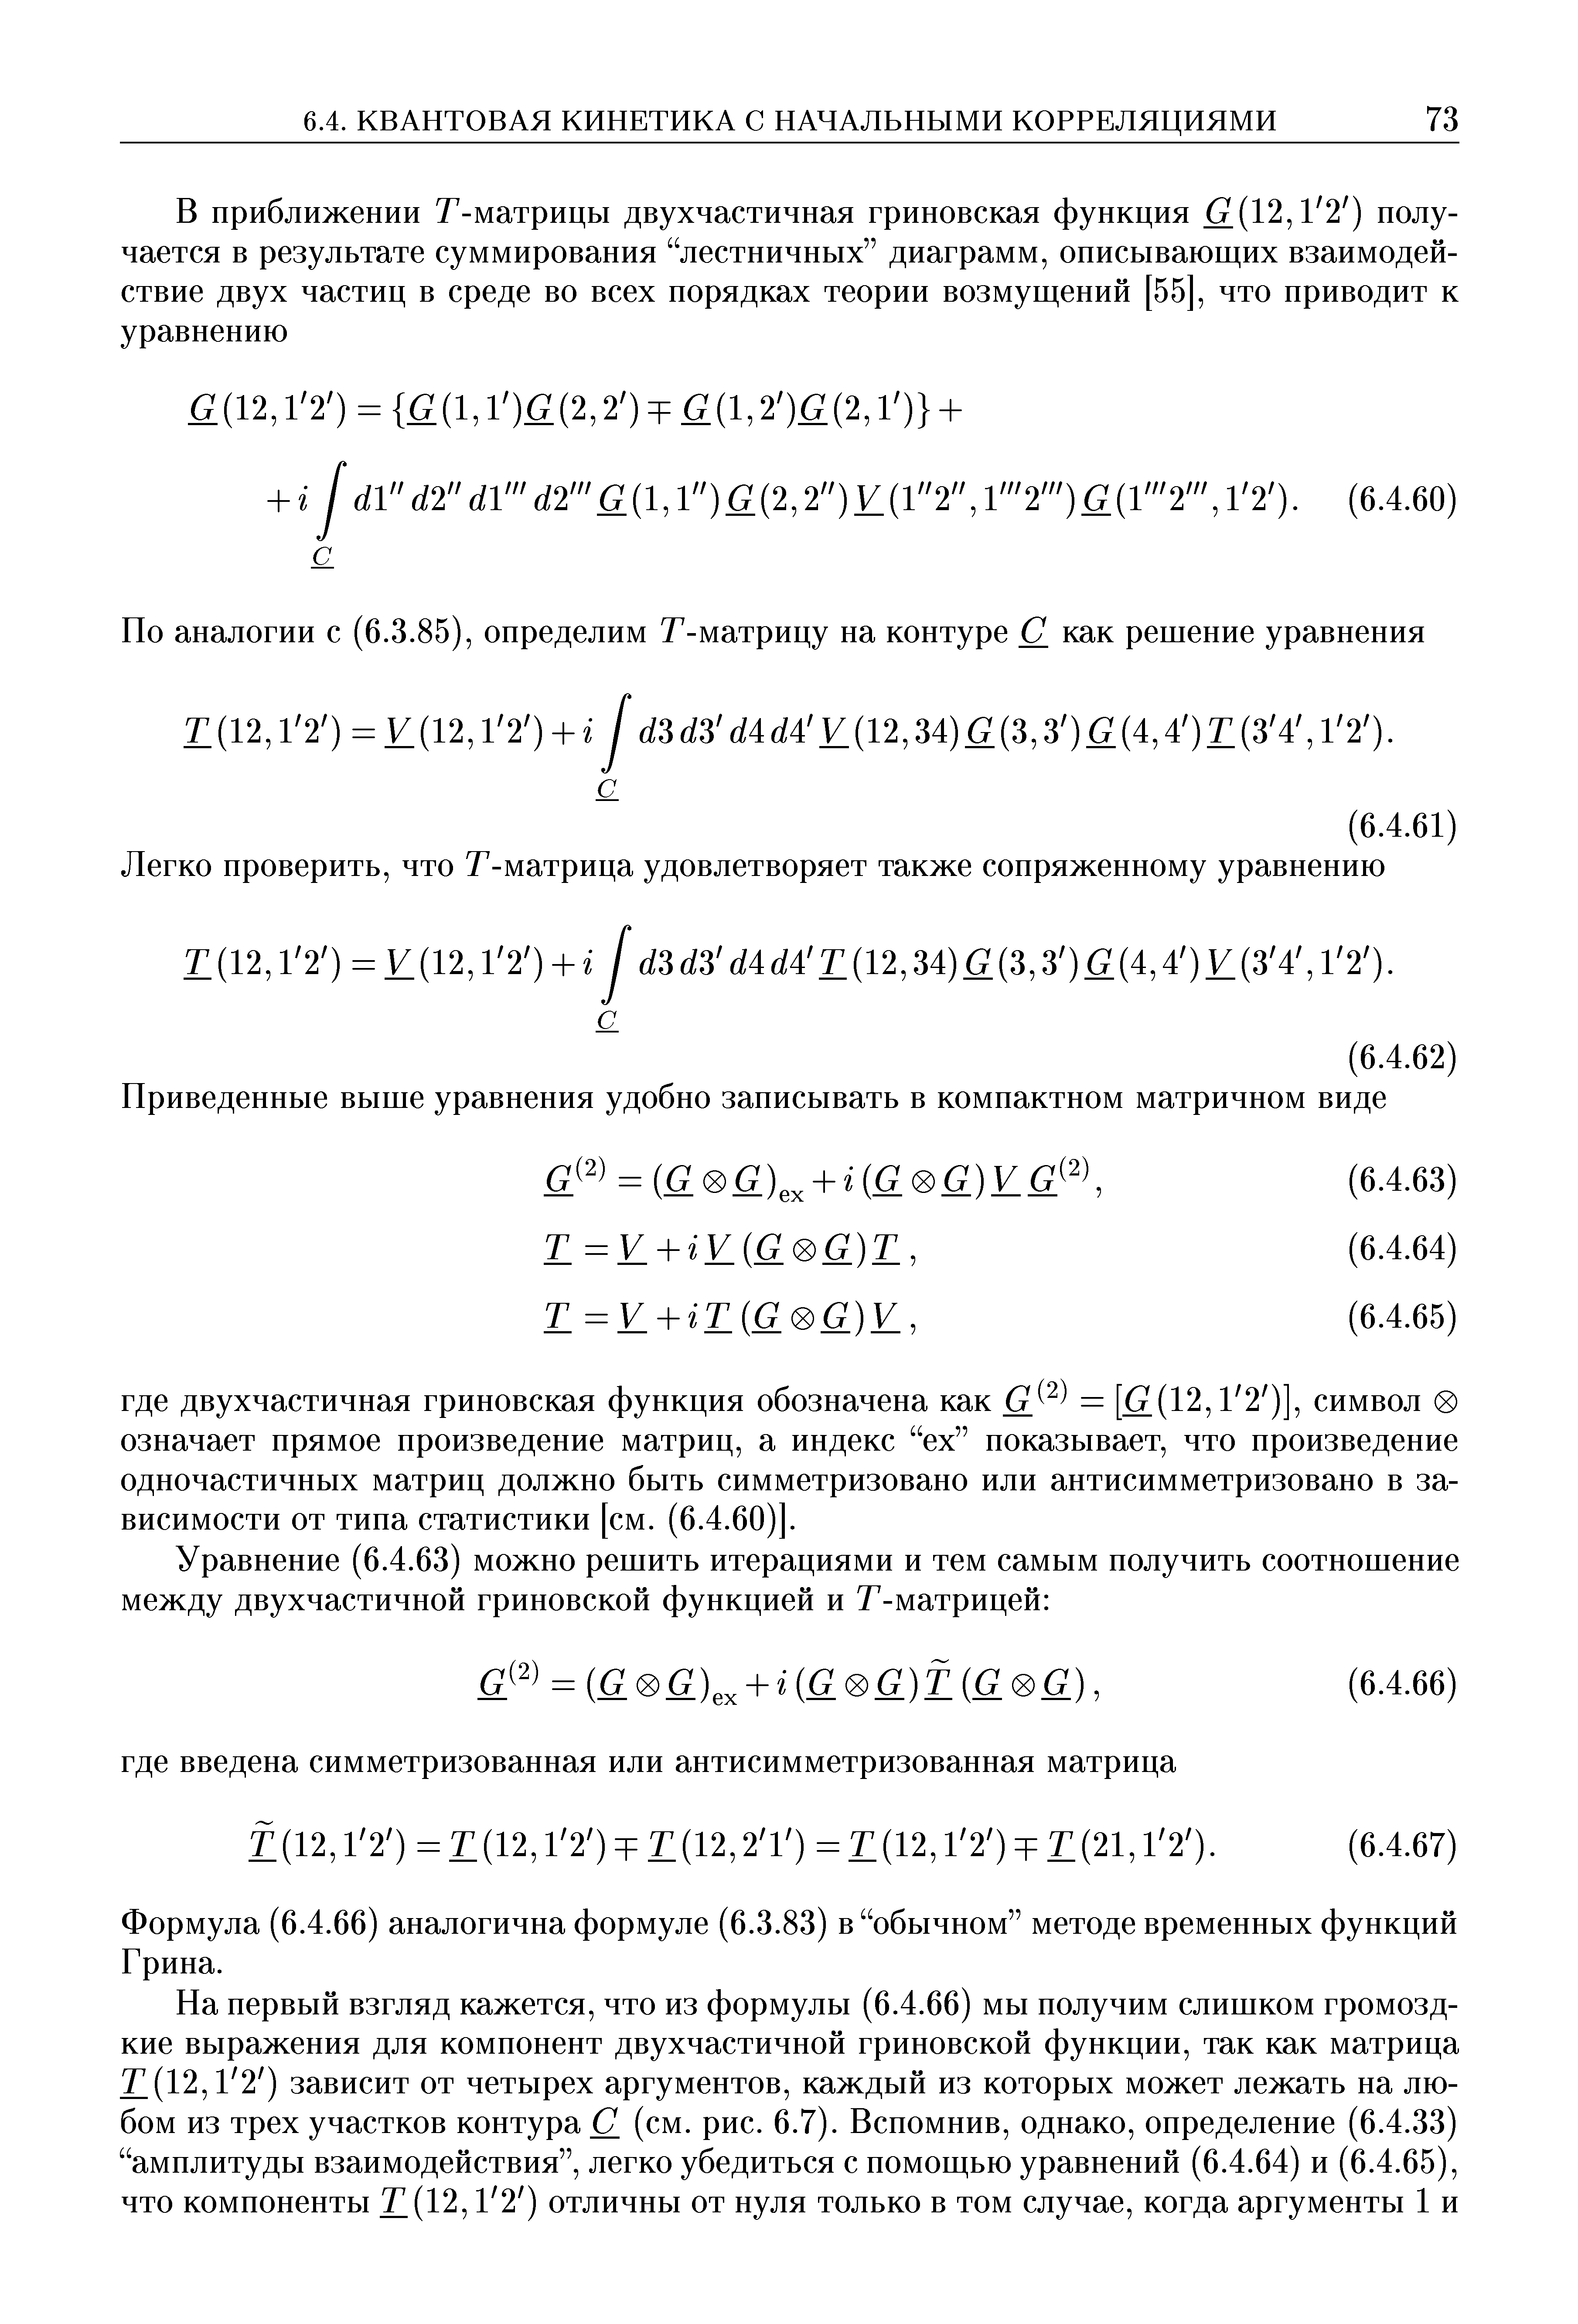 Формула (6.4.66) аналогична формуле (6.3.83) в обычном методе временных функций Грина.
